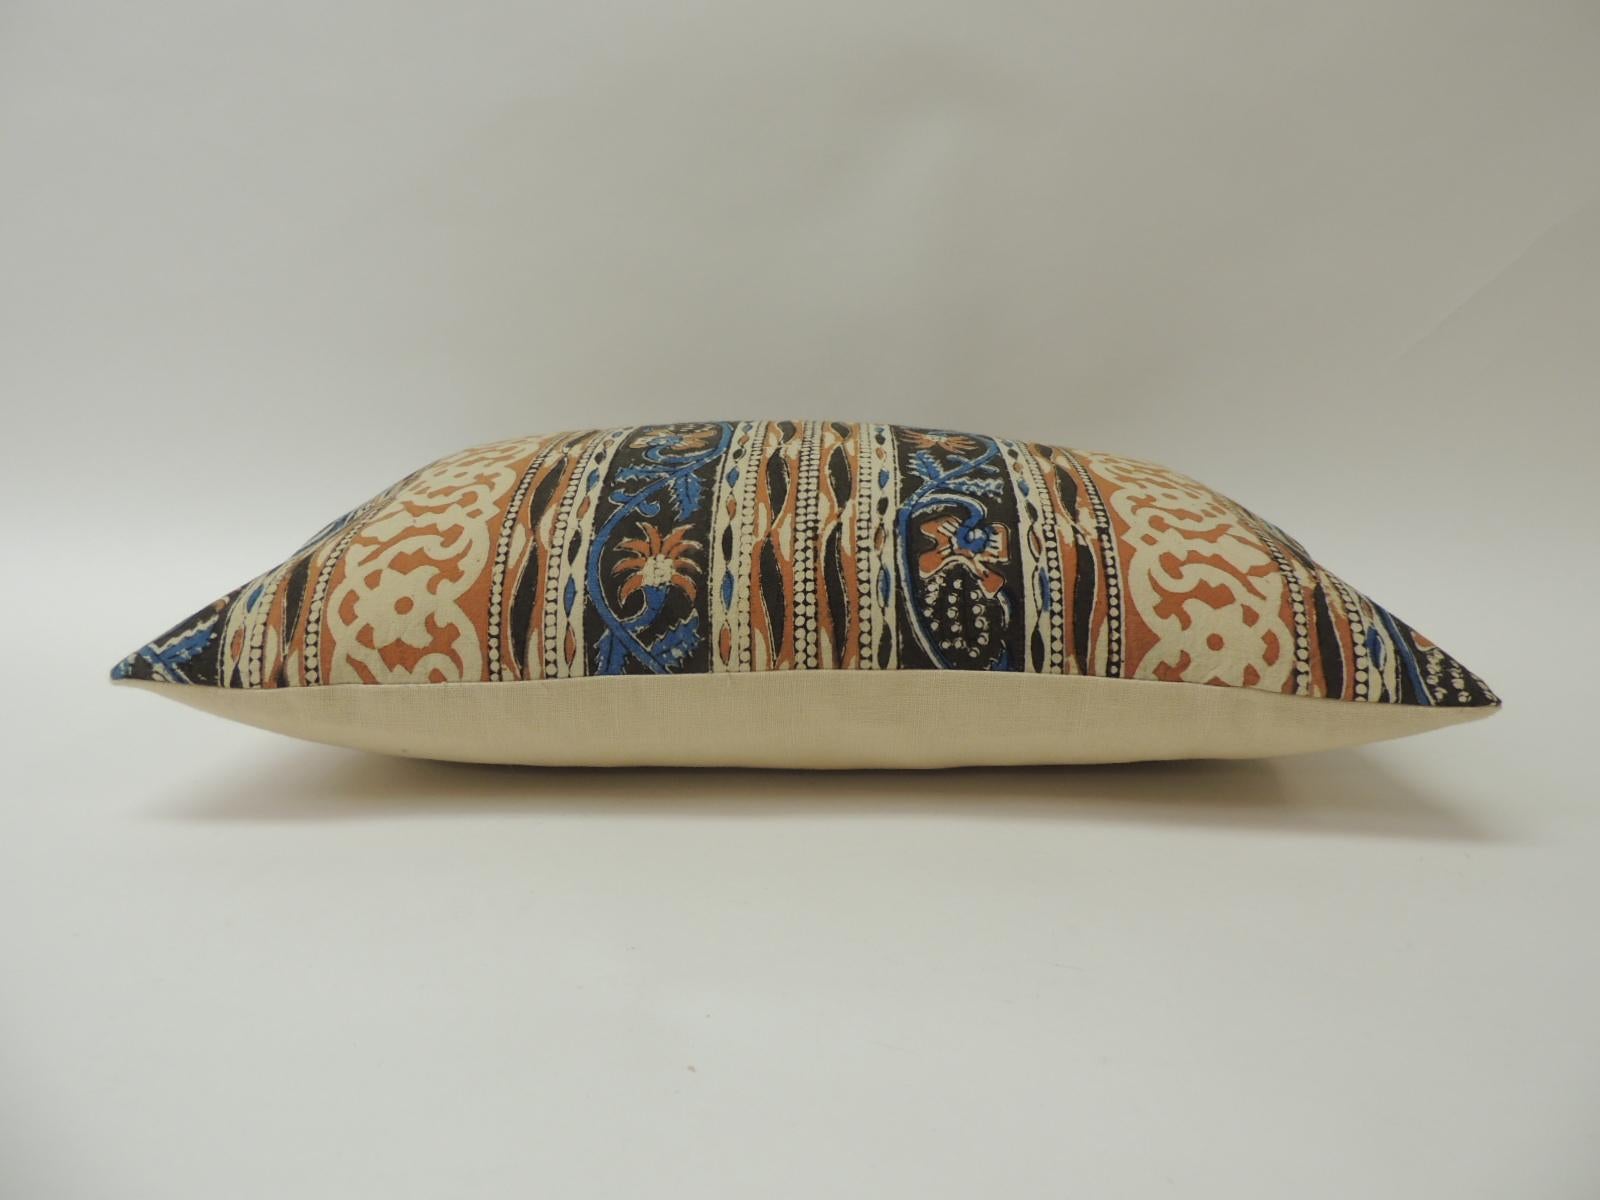 Moorish Vintage Indian Hand-Blocked Artisanal Textile Decorative Lumbar Pillow